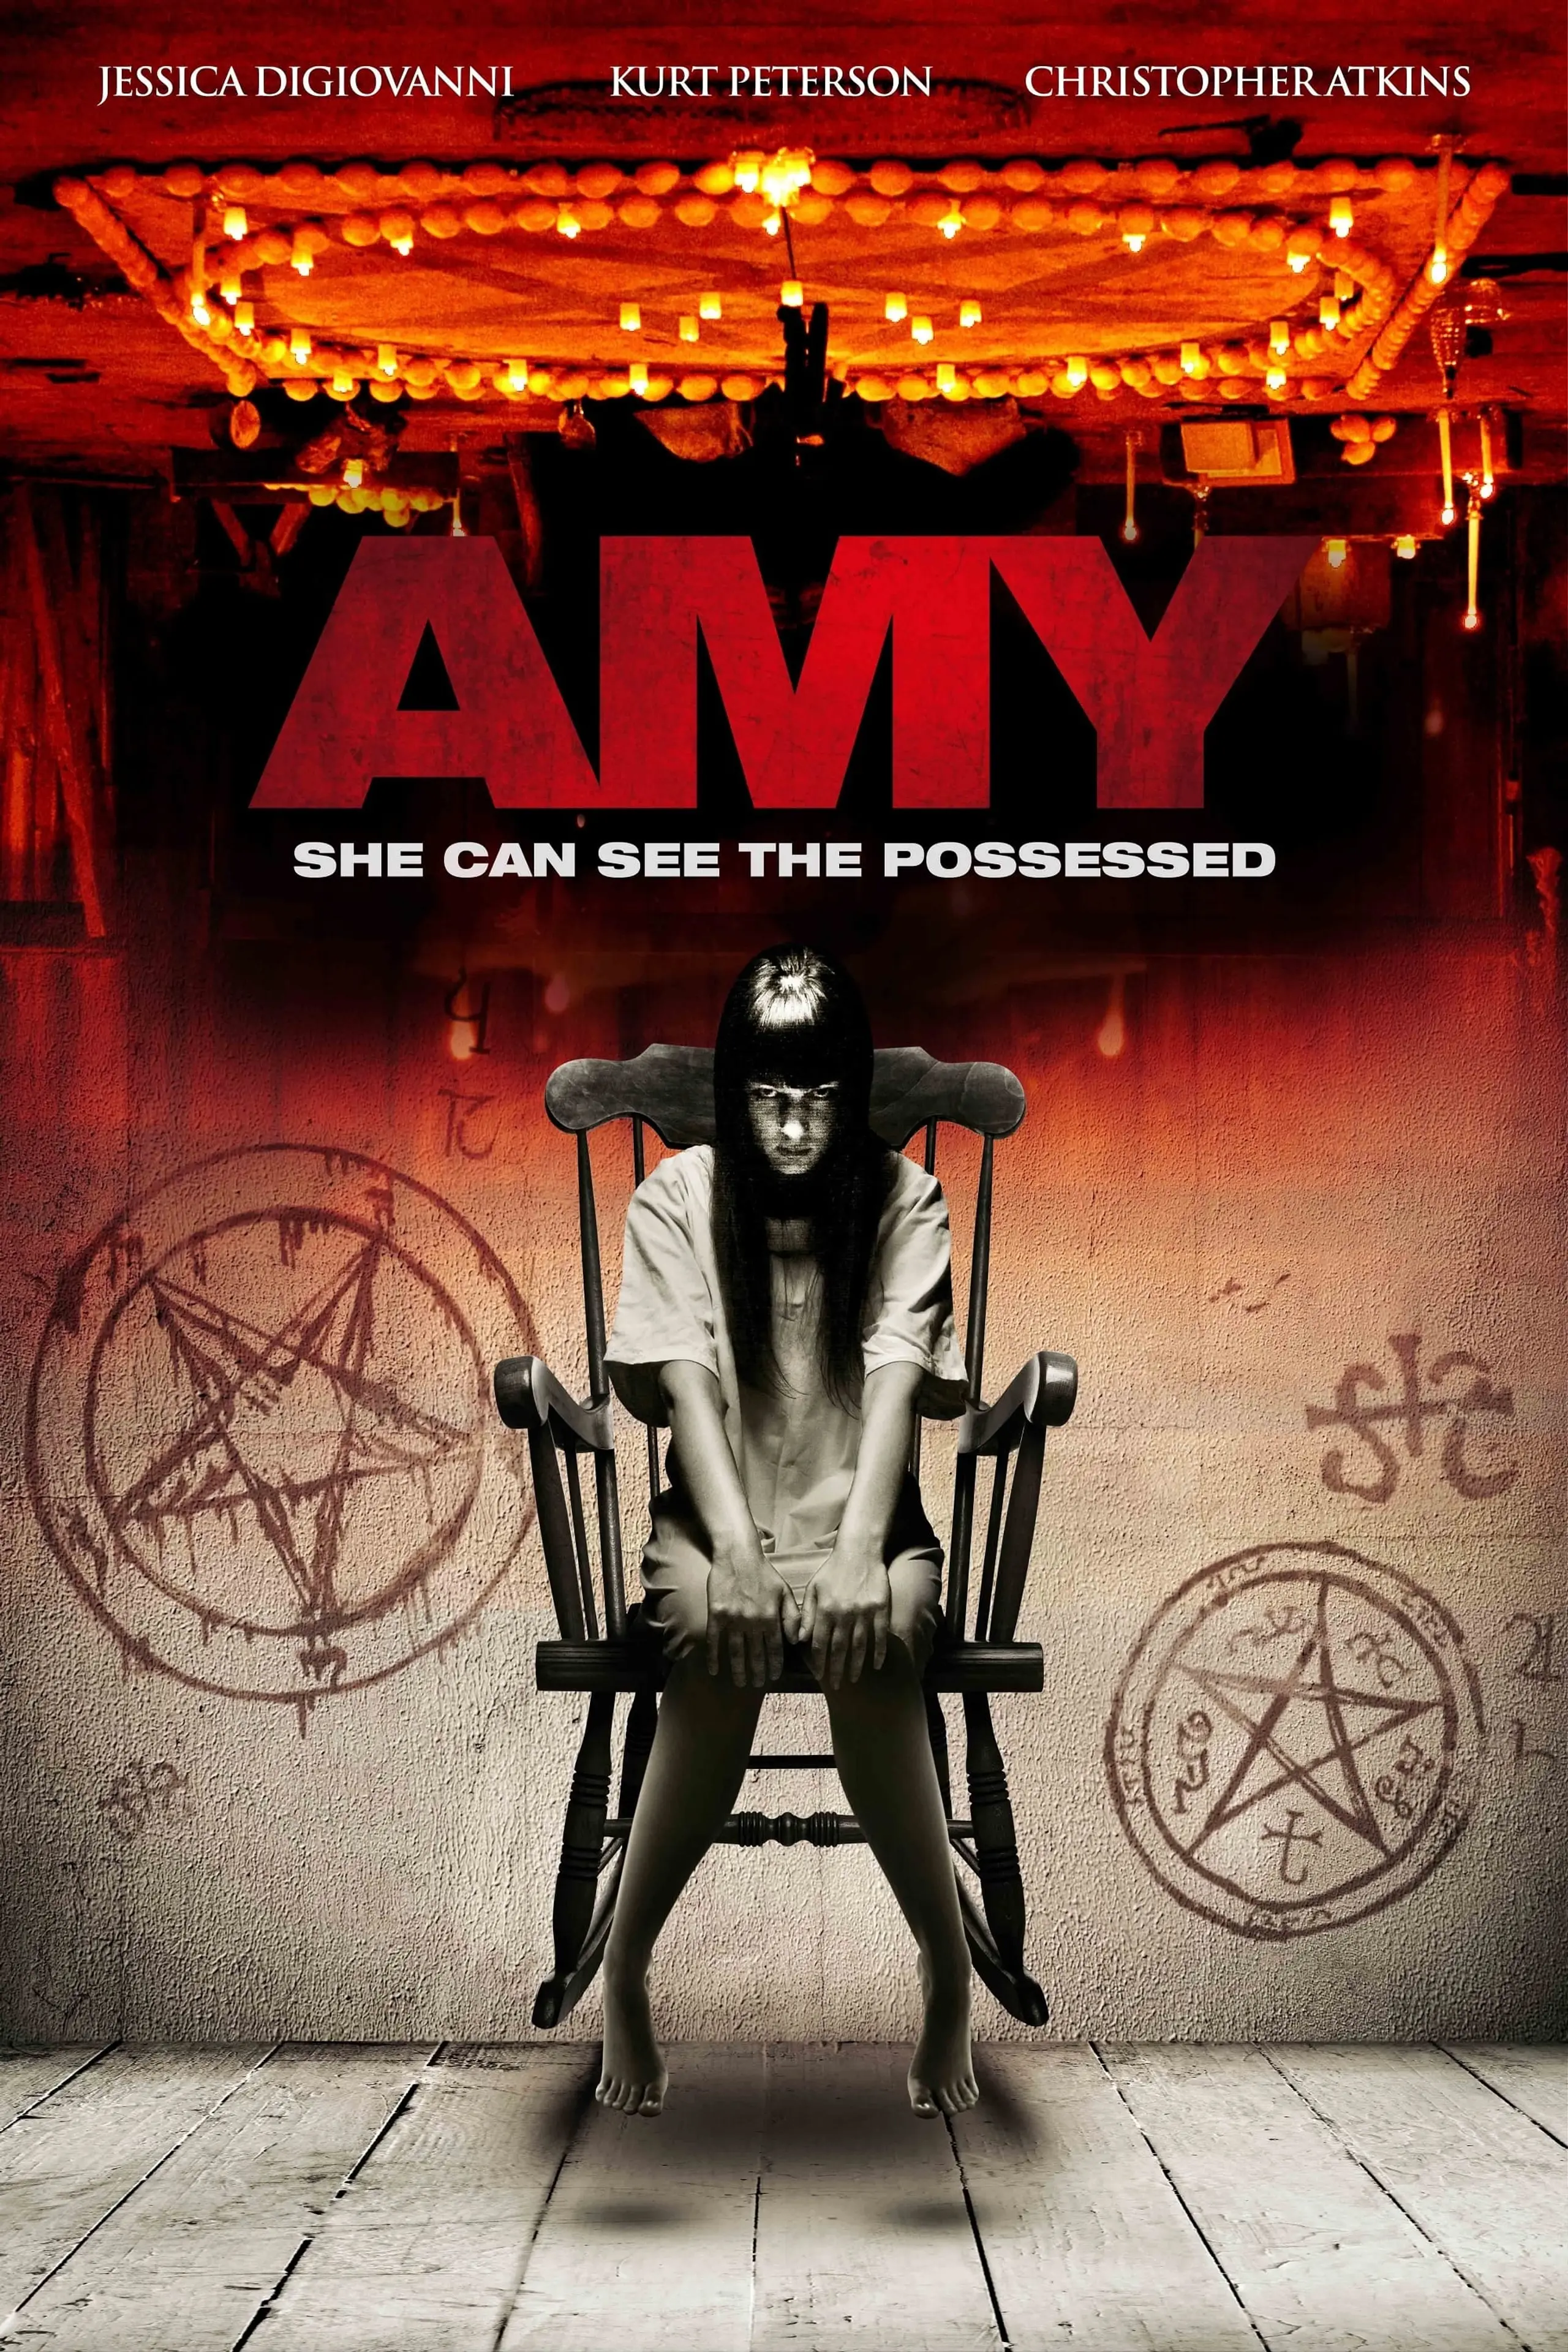 Amy - Sie öffnet das Tor zur Hölle